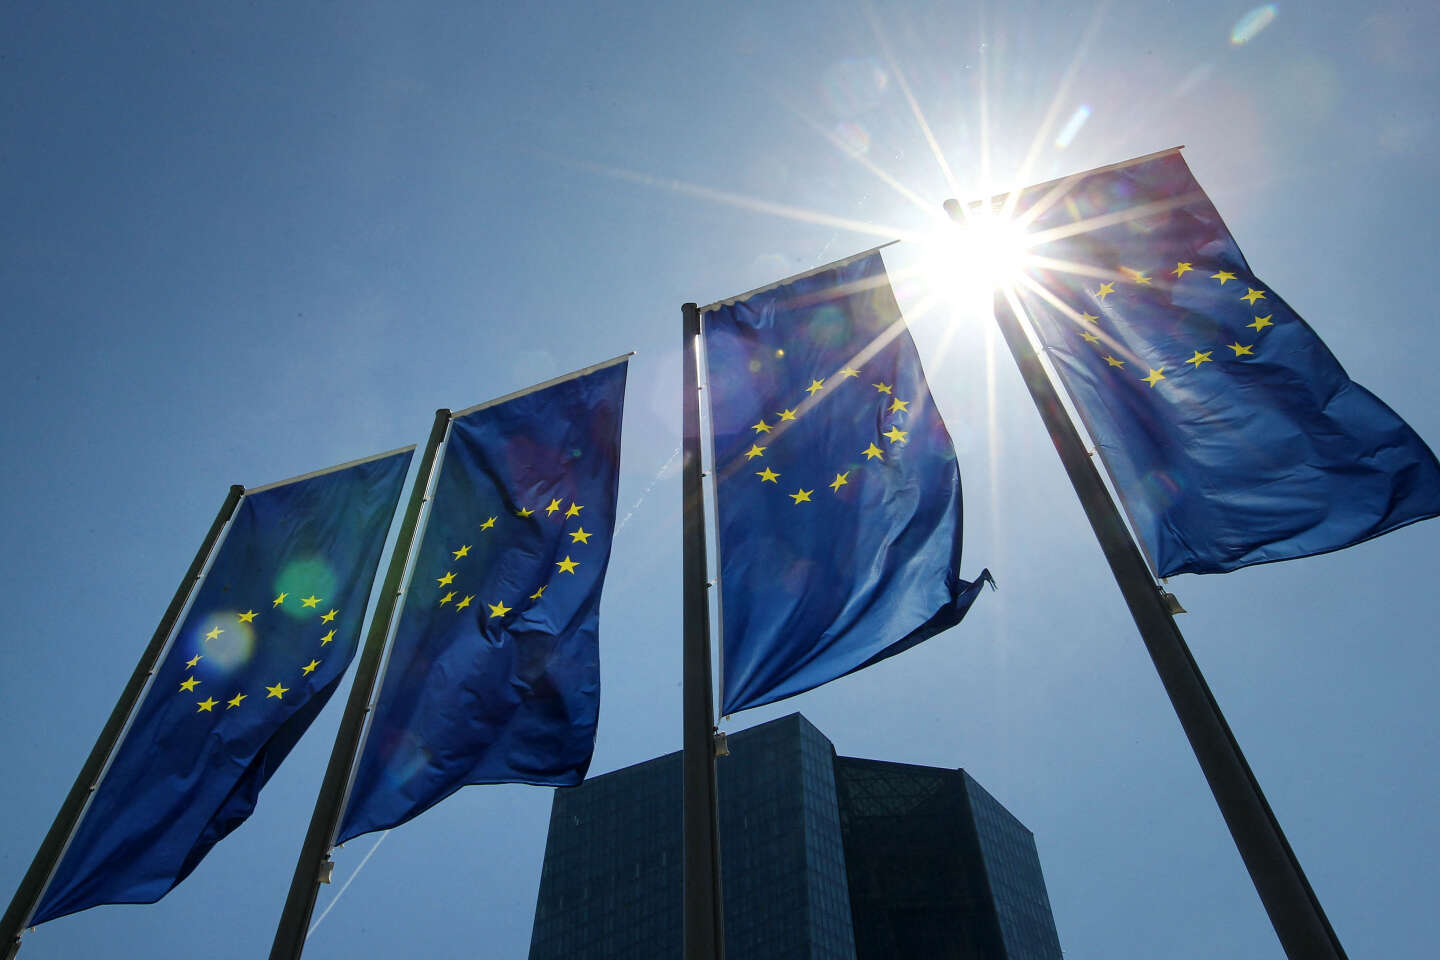 Na een spoedvergadering beloofde de Europese Centrale Bank “enige flexibiliteit” in het licht van massale renteverhogingen in Europa